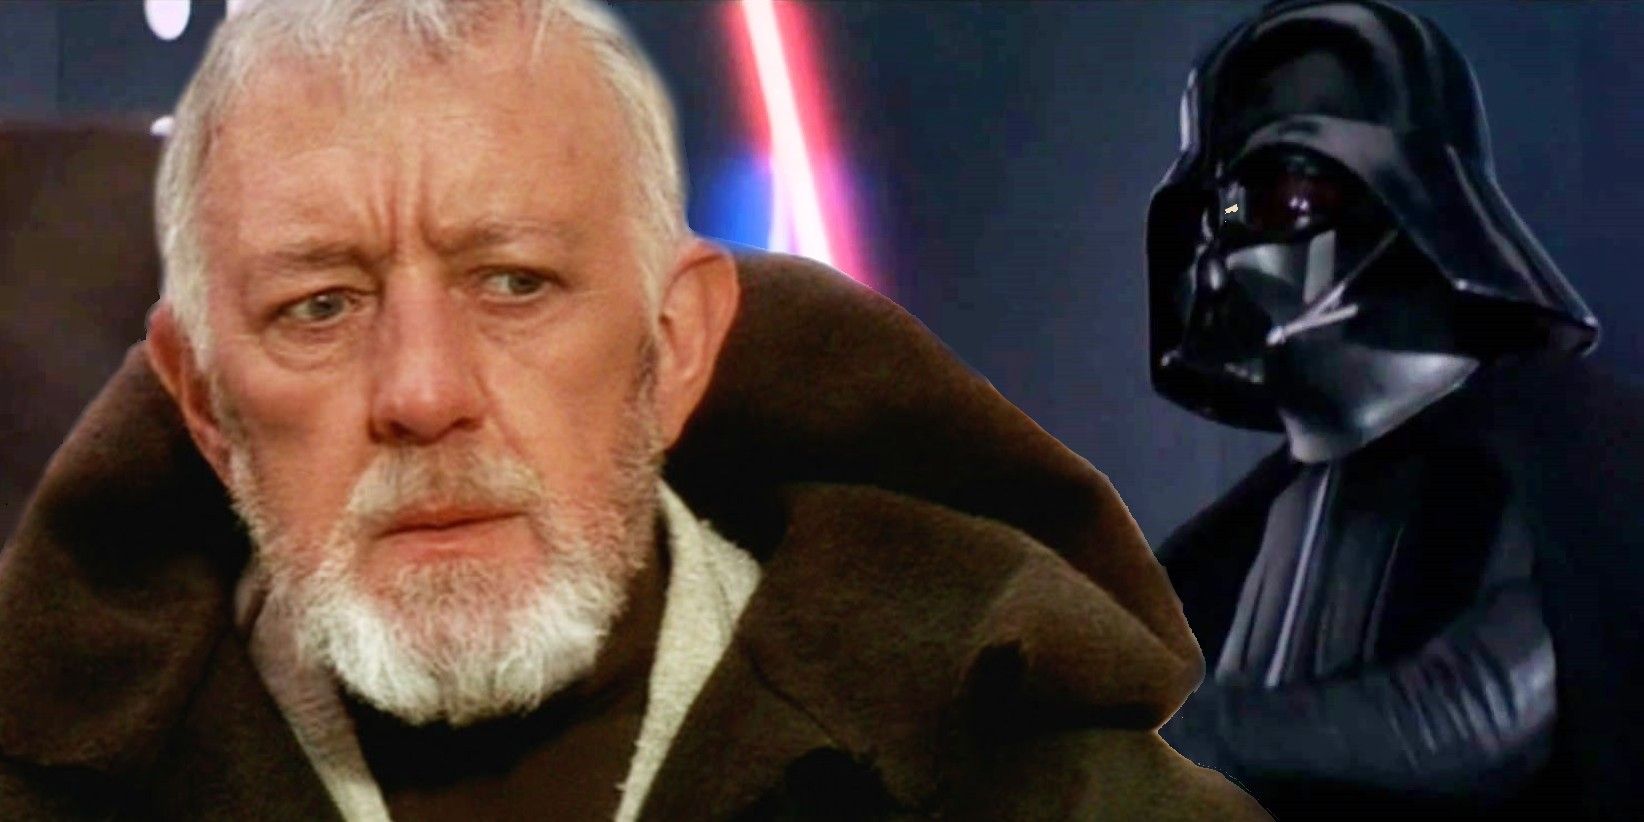 Darth Vader and Alec Guinness as Obi-Wan Kenobi in Star Wars